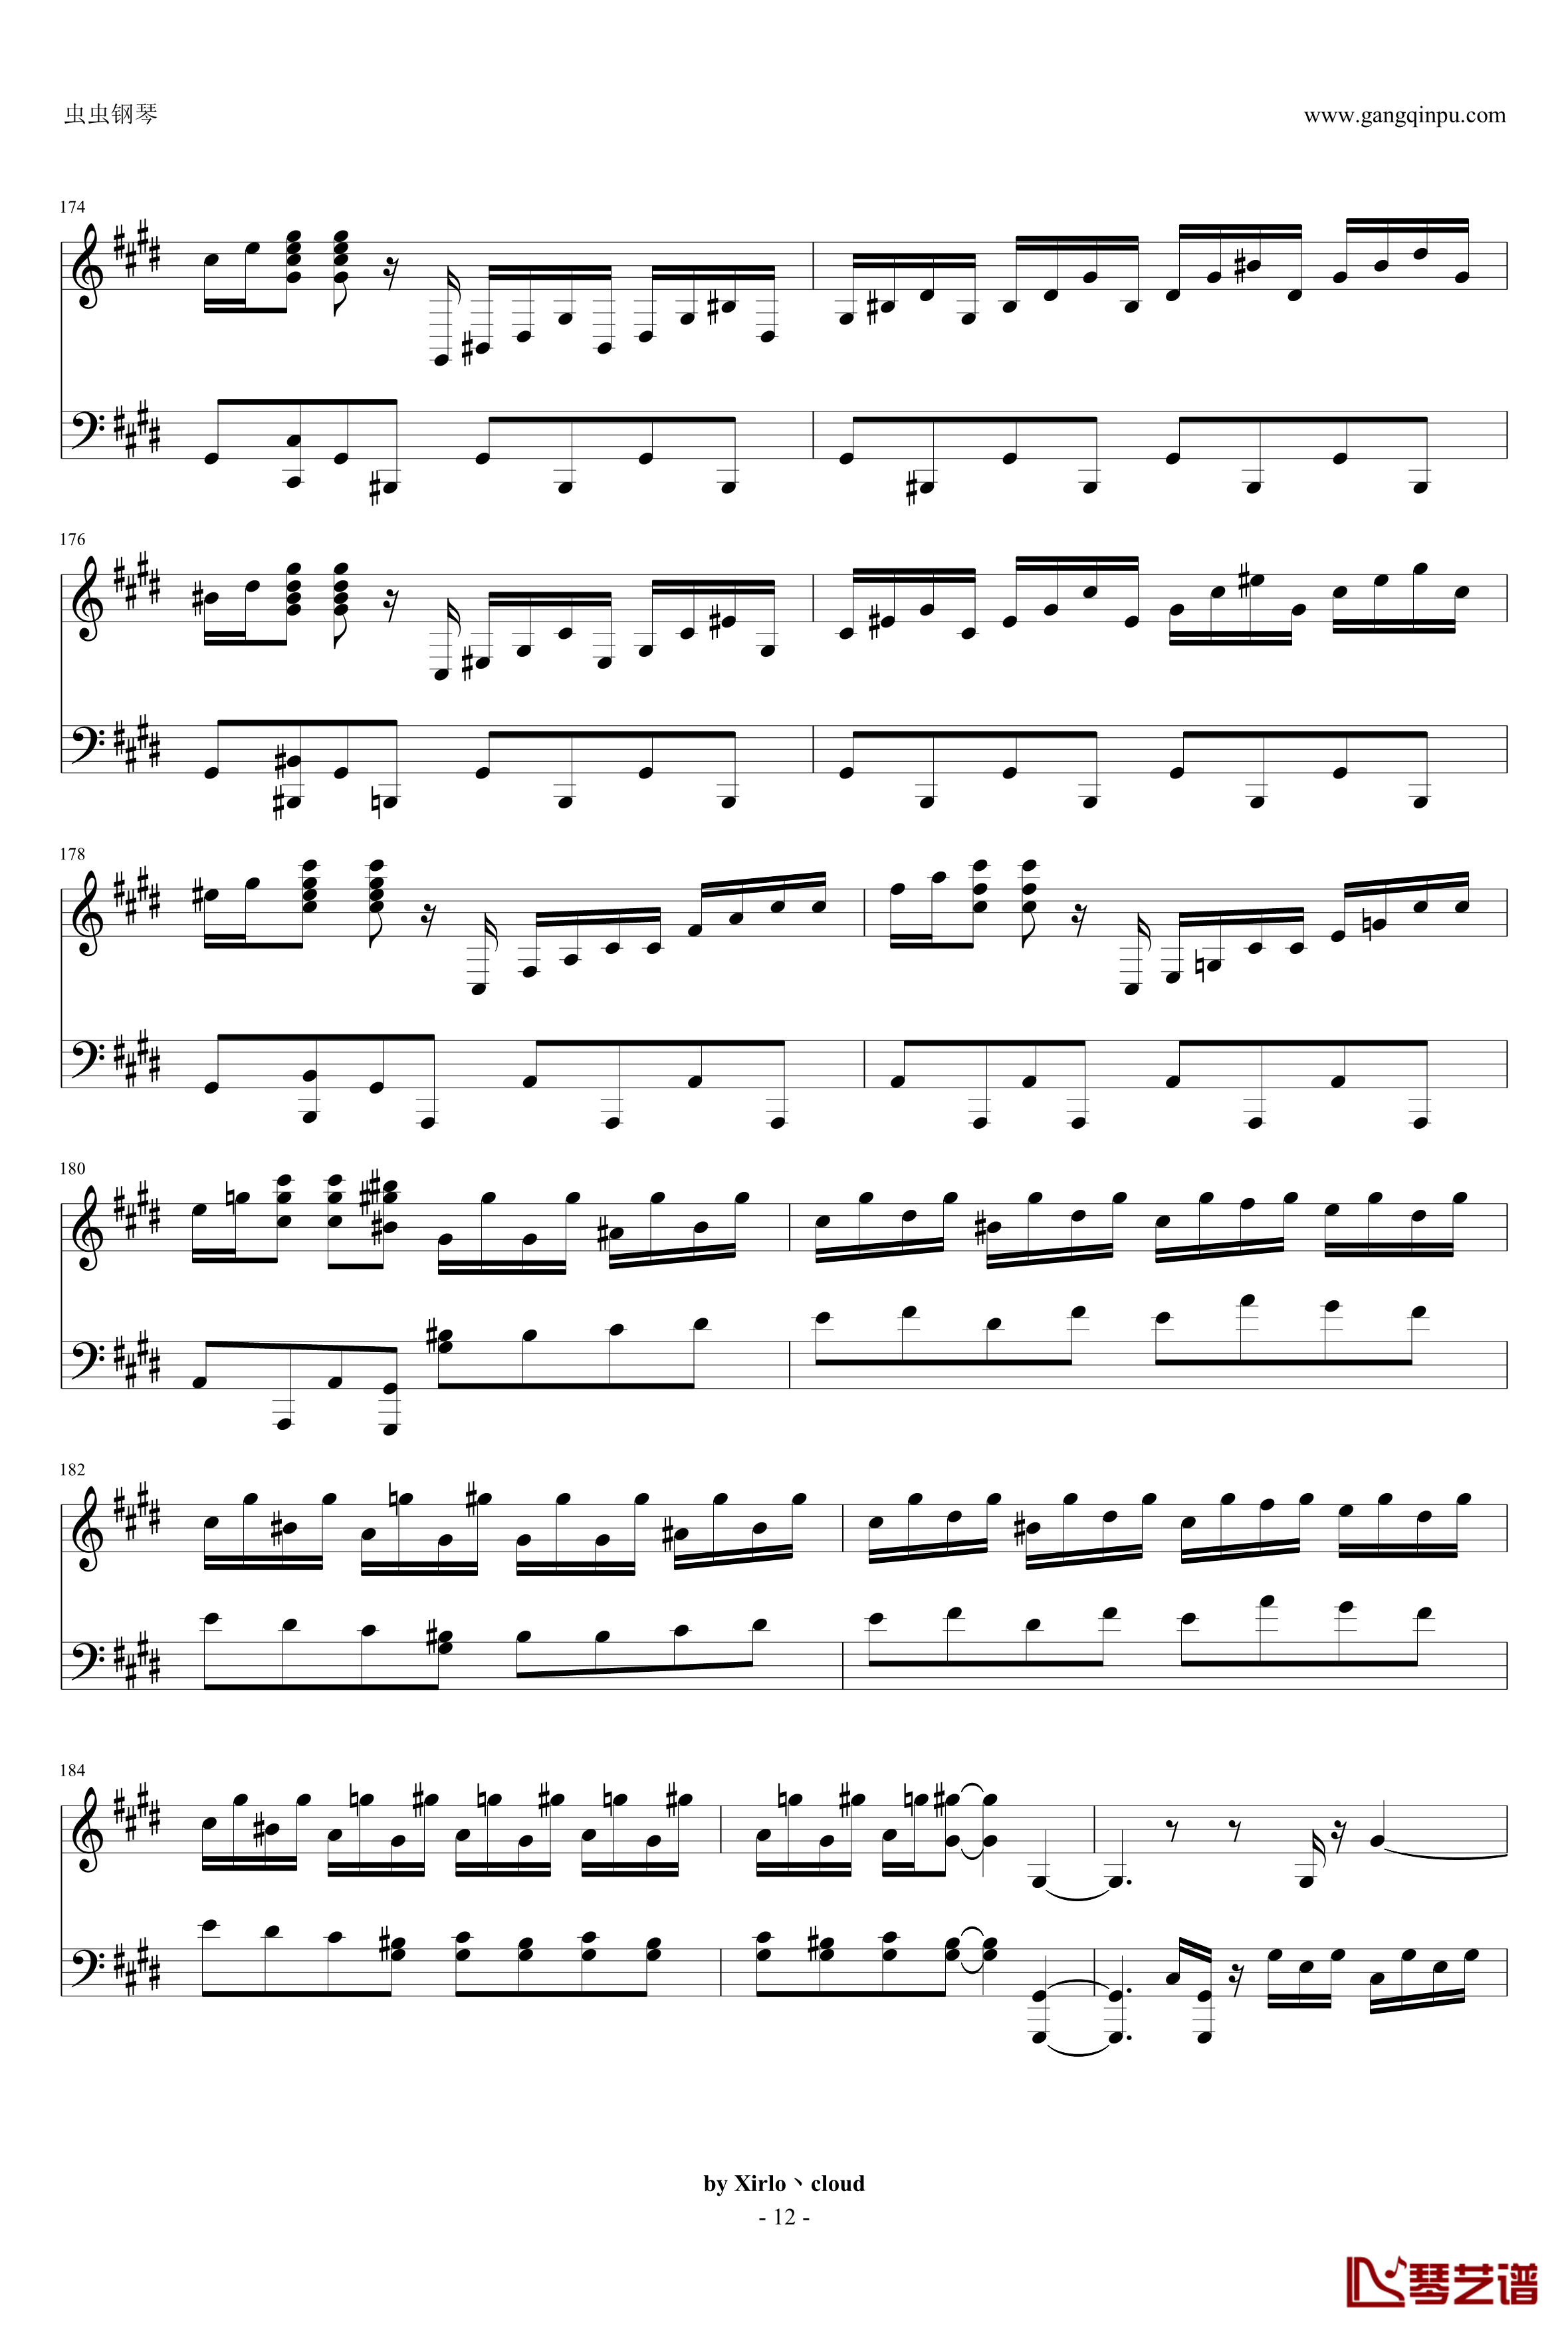 月光奏鸣曲钢琴谱-改编版-贝多芬-beethoven12